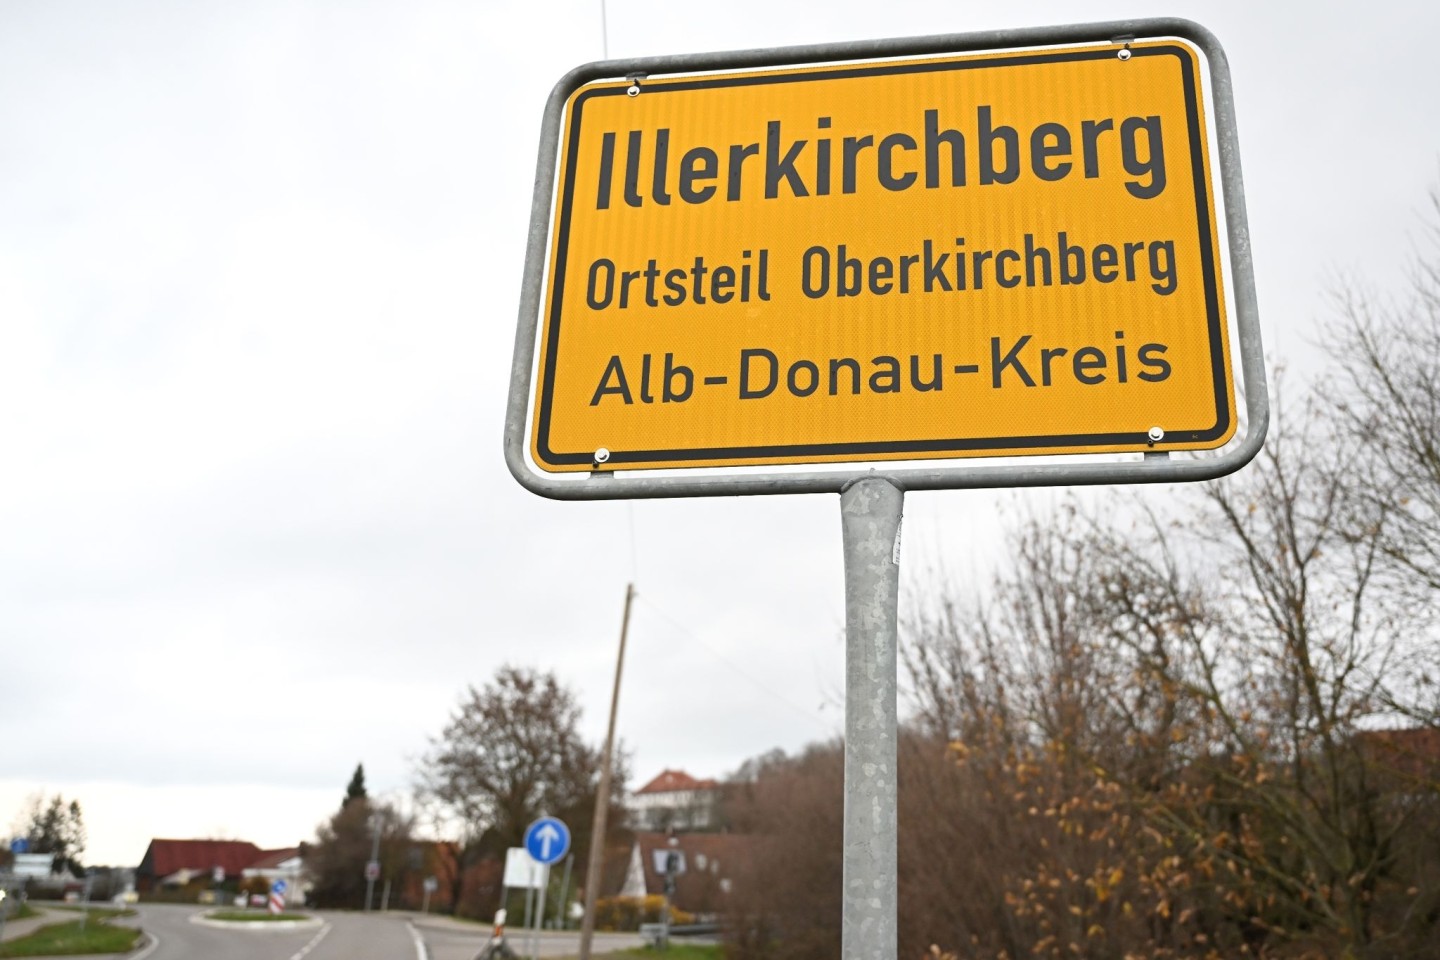 Das Ortsschild von Illerkirchberg. Zwei Mädchen wurden hier auf ihrem Schulweg angegriffen.